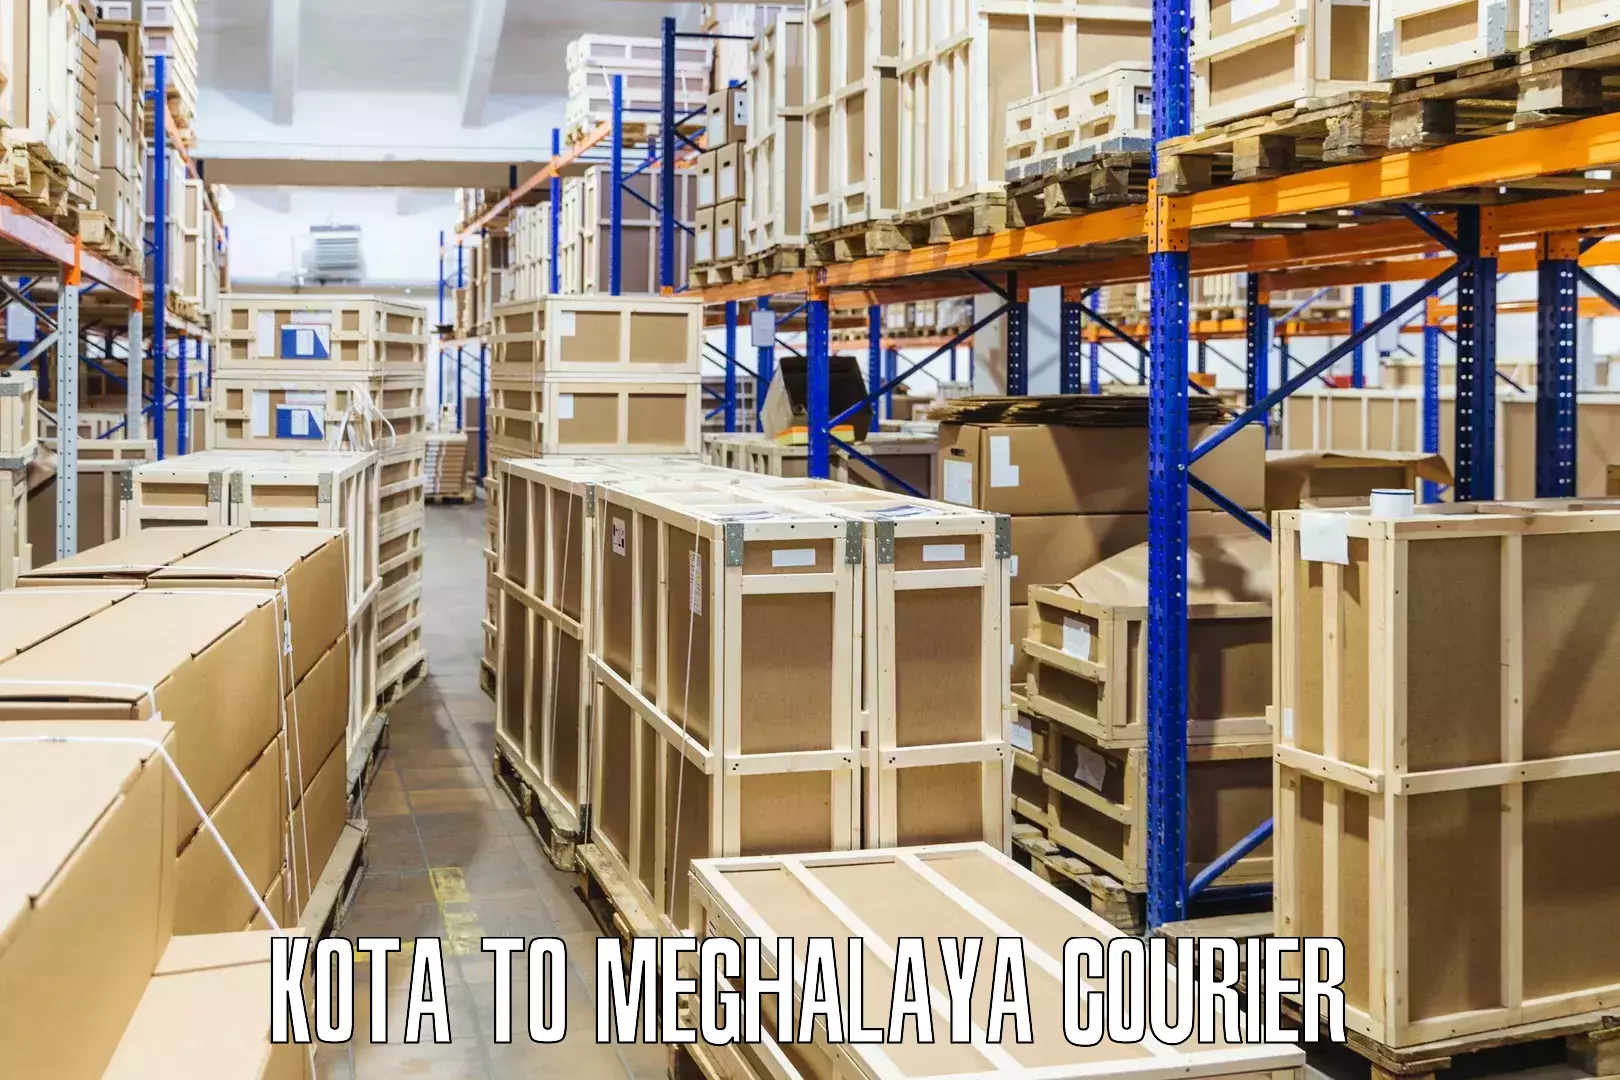 Flexible parcel services Kota to Dkhiah West